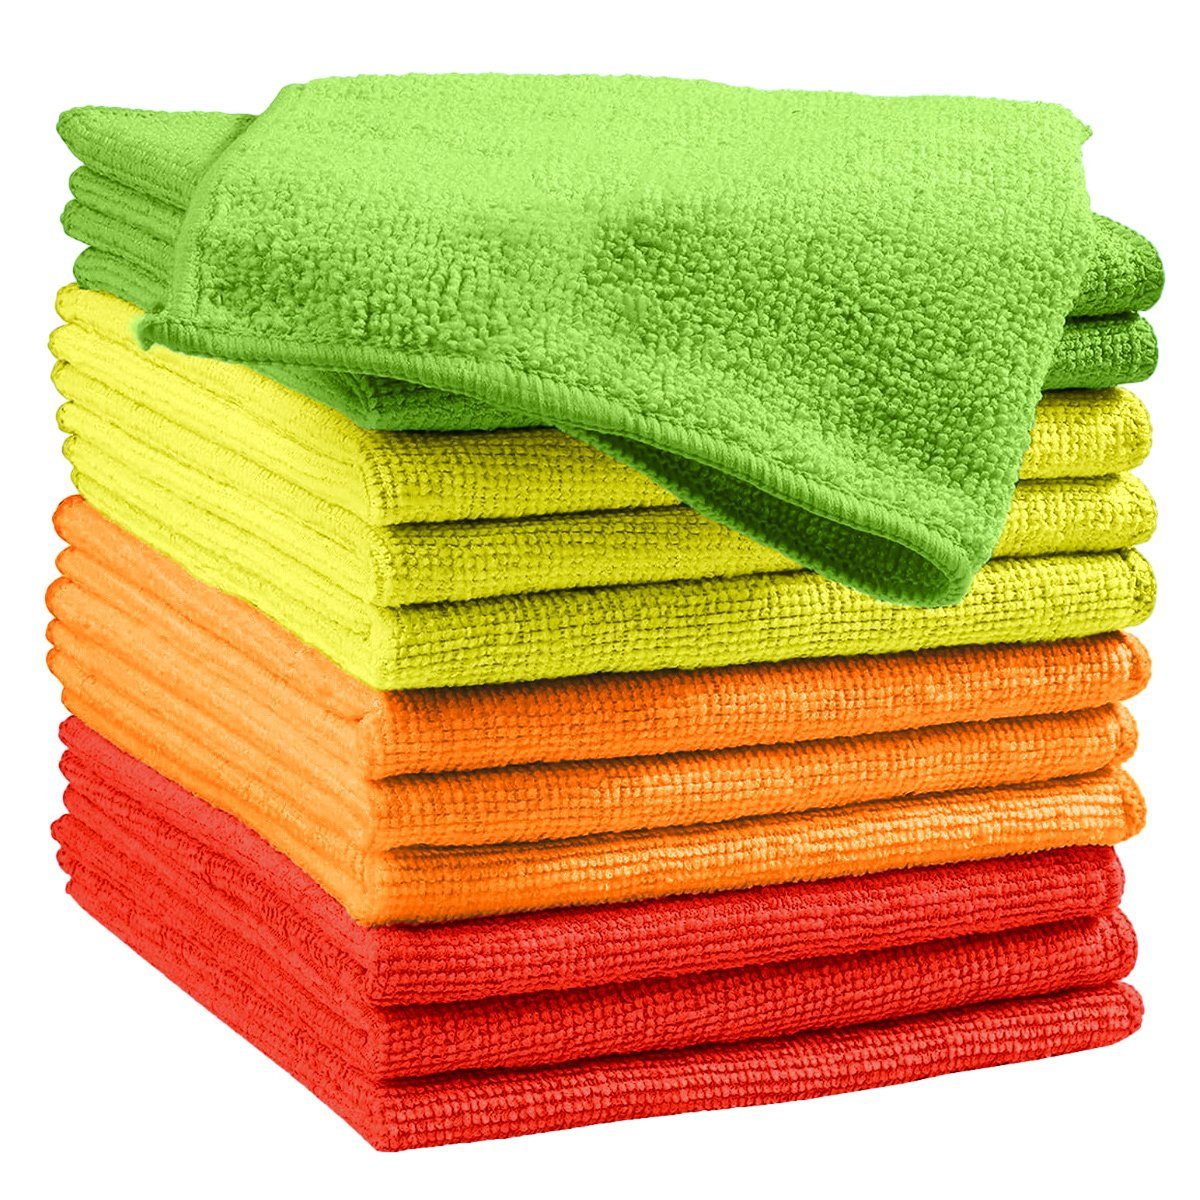 Questive Mikrofaser-Reinigungstuch12 Stück Reinigungstücher, Reinigungstücher Reinigungstücher Rot,Gelb,Grün,Orange